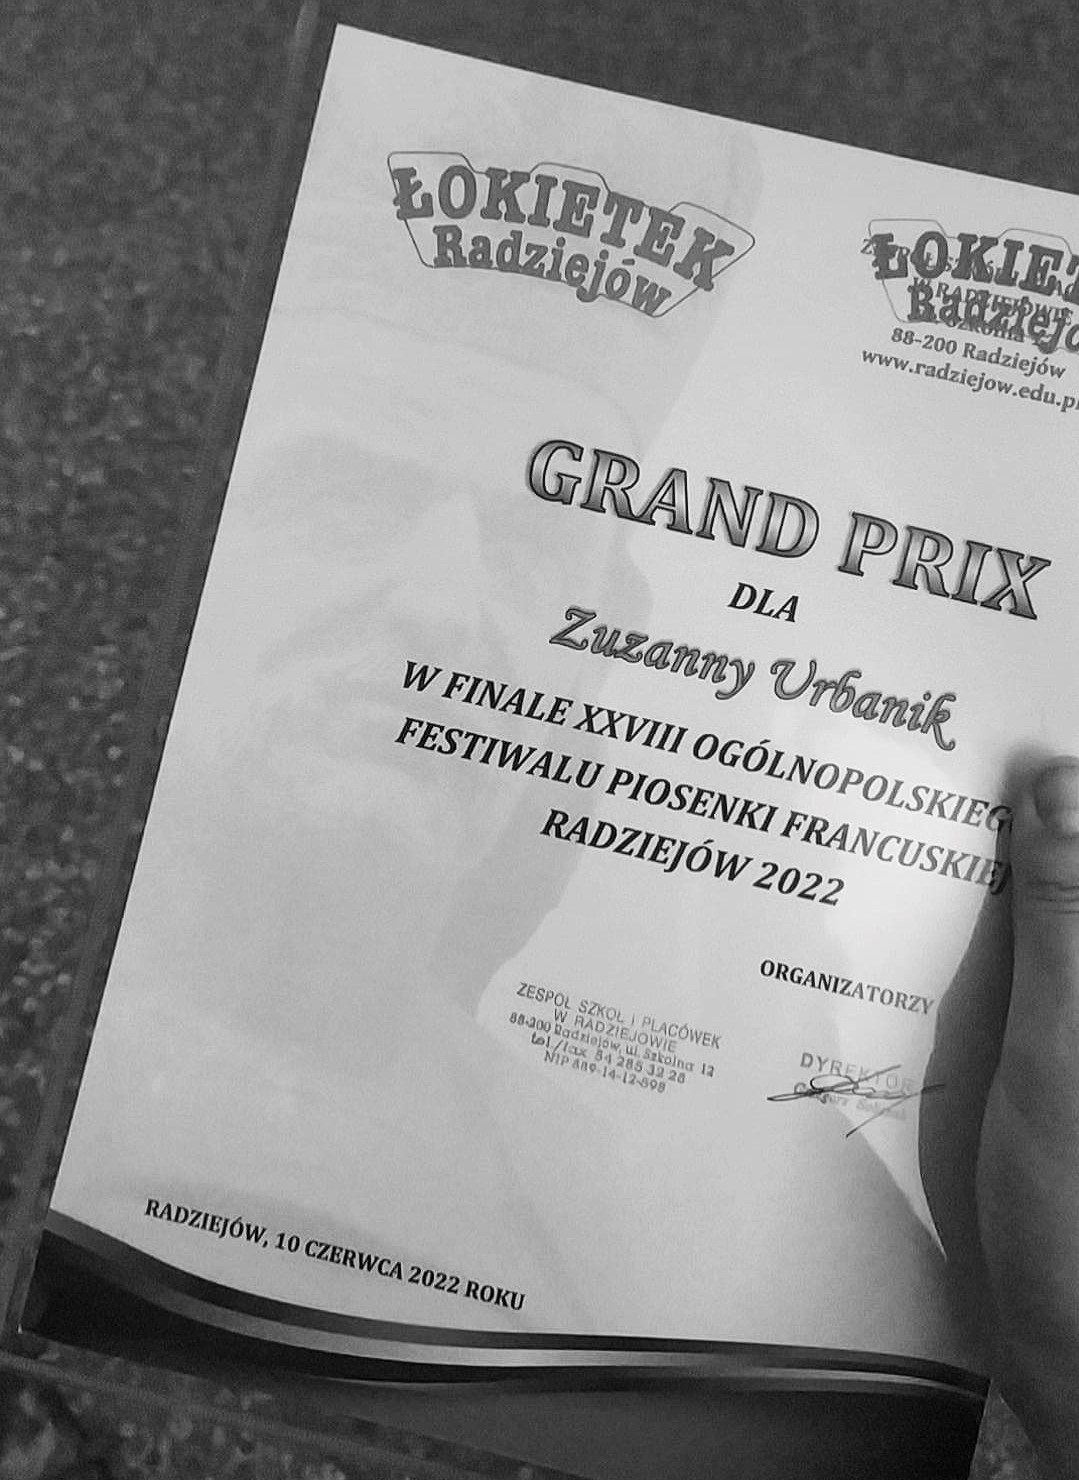 Grand Prix XXVIII Ogólnopolskiego Festiwalu Piosenki Francuskiej w Radziejowie dla Uczennicy I LO!